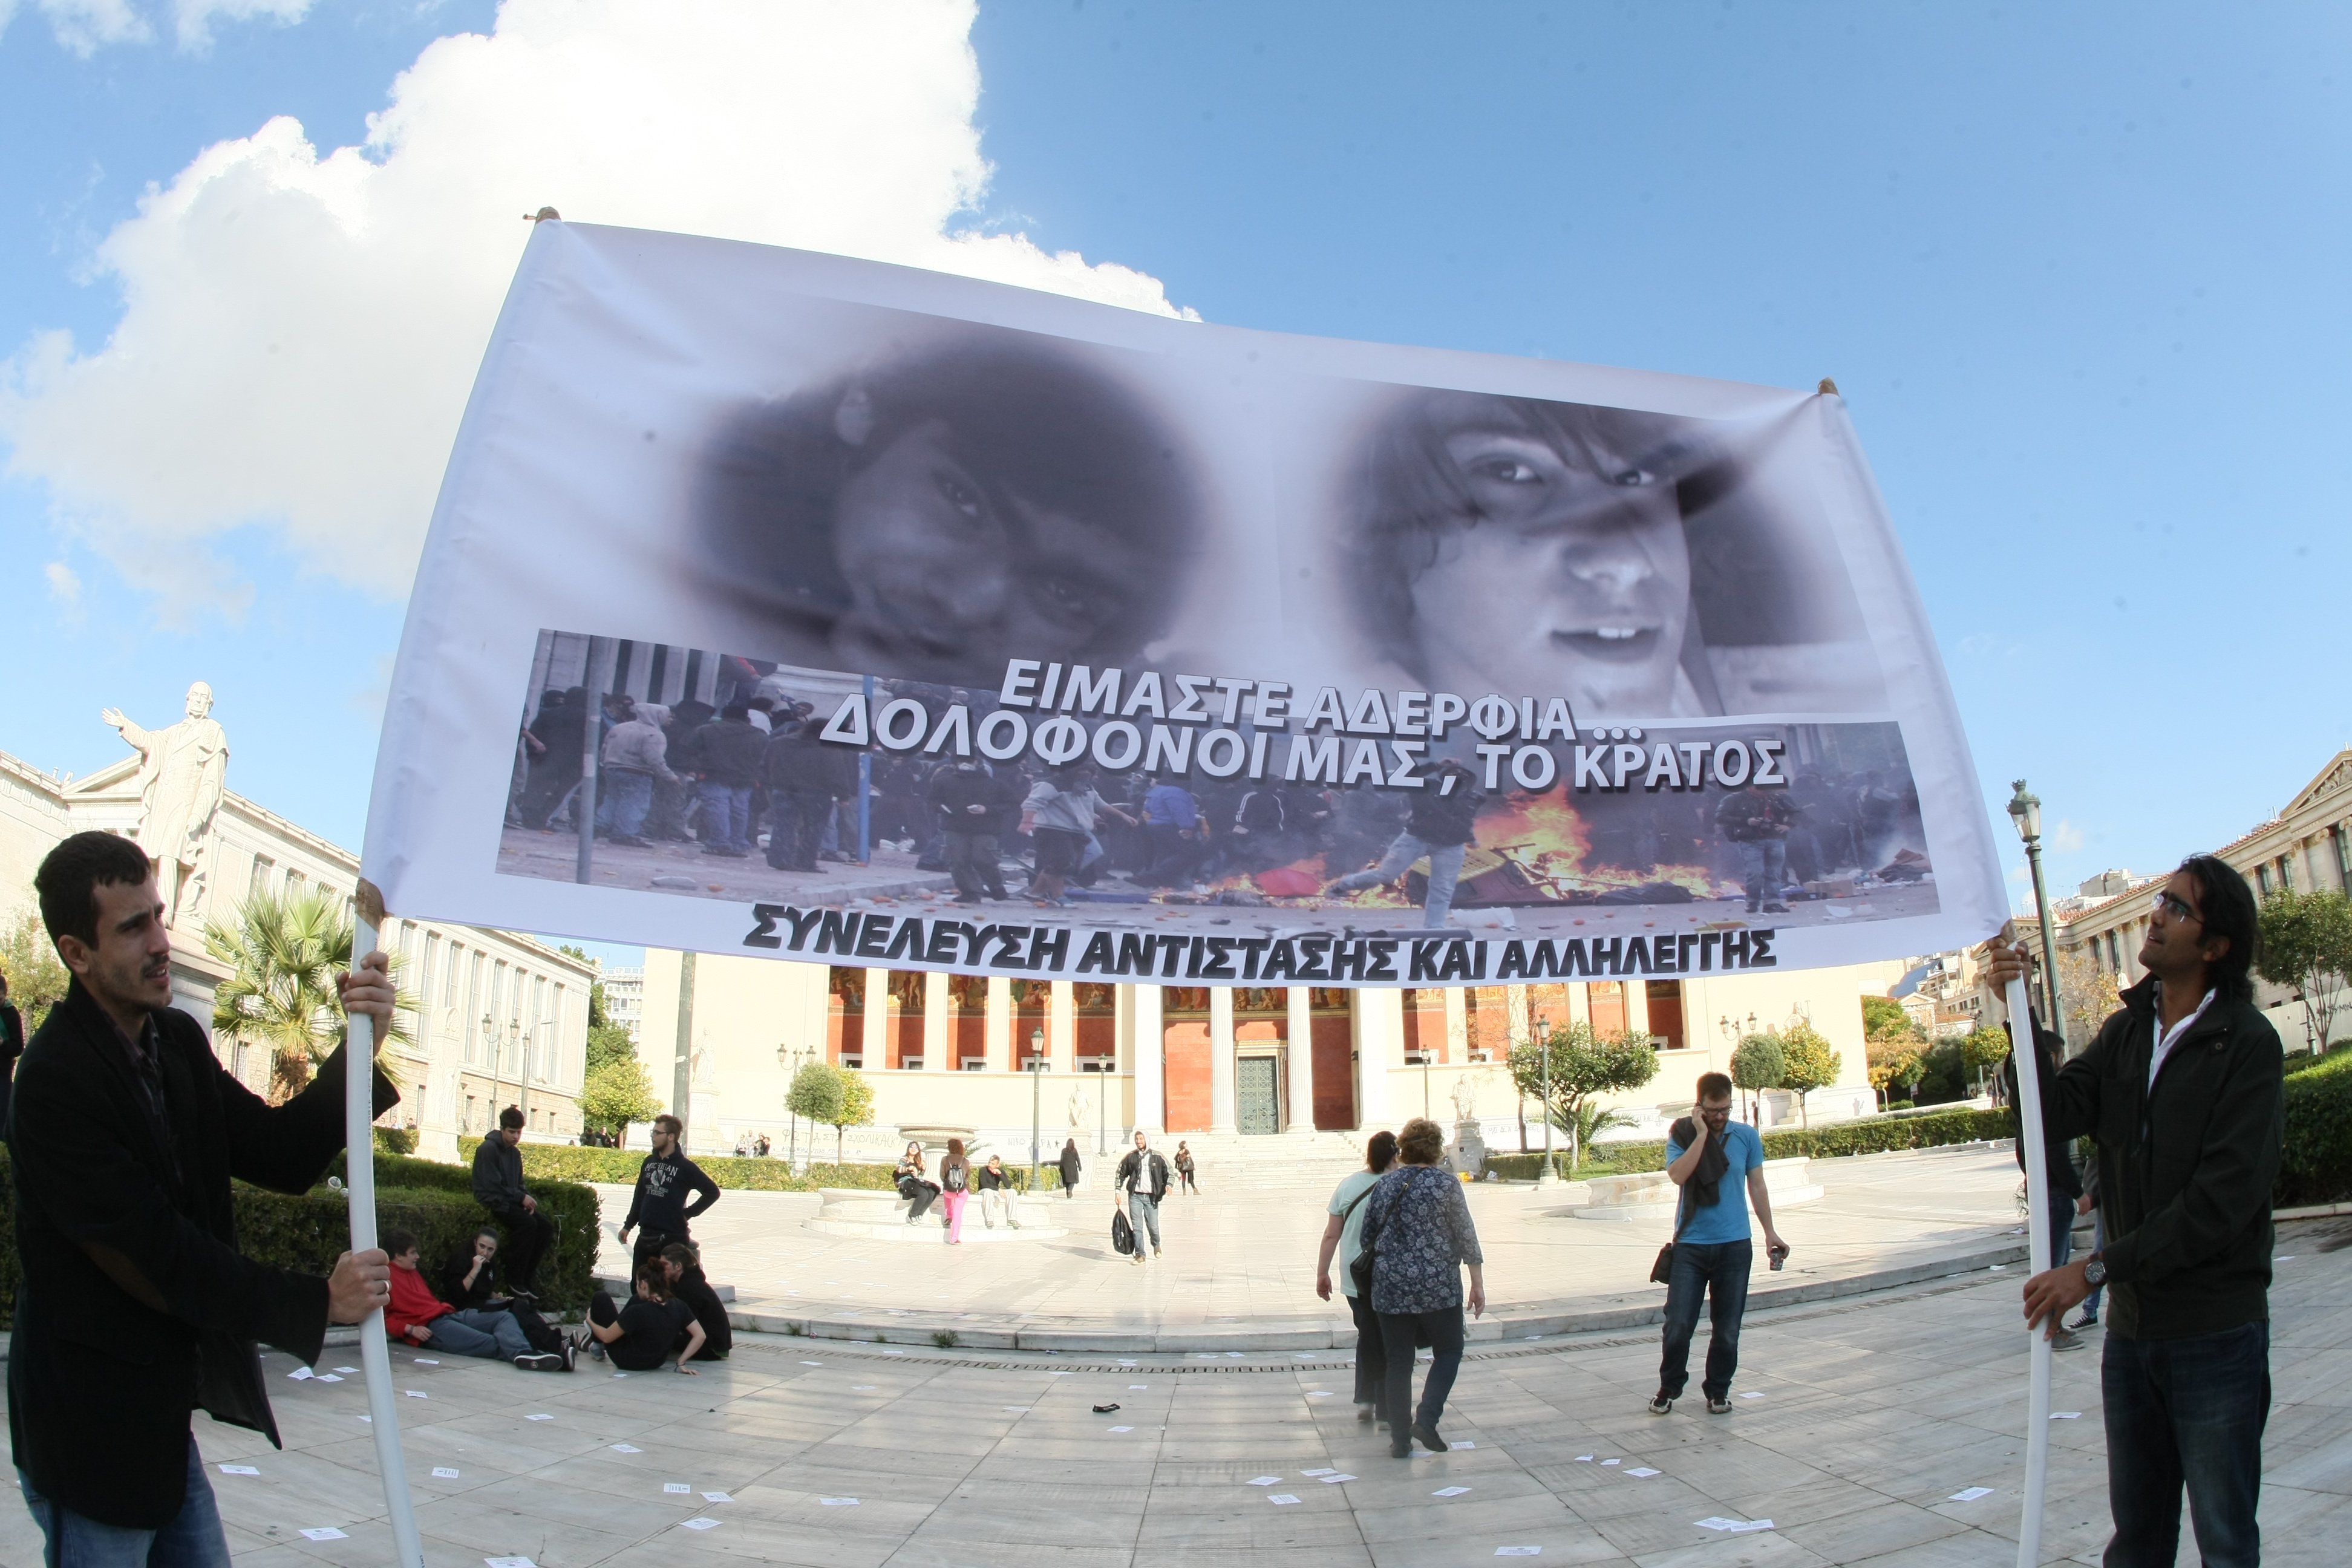 Συλλαλητήριο υπό δρακόντεια μέτρα στα Προπύλαια για τον Αλέξη Γρηγορόπουλο (φωτο)